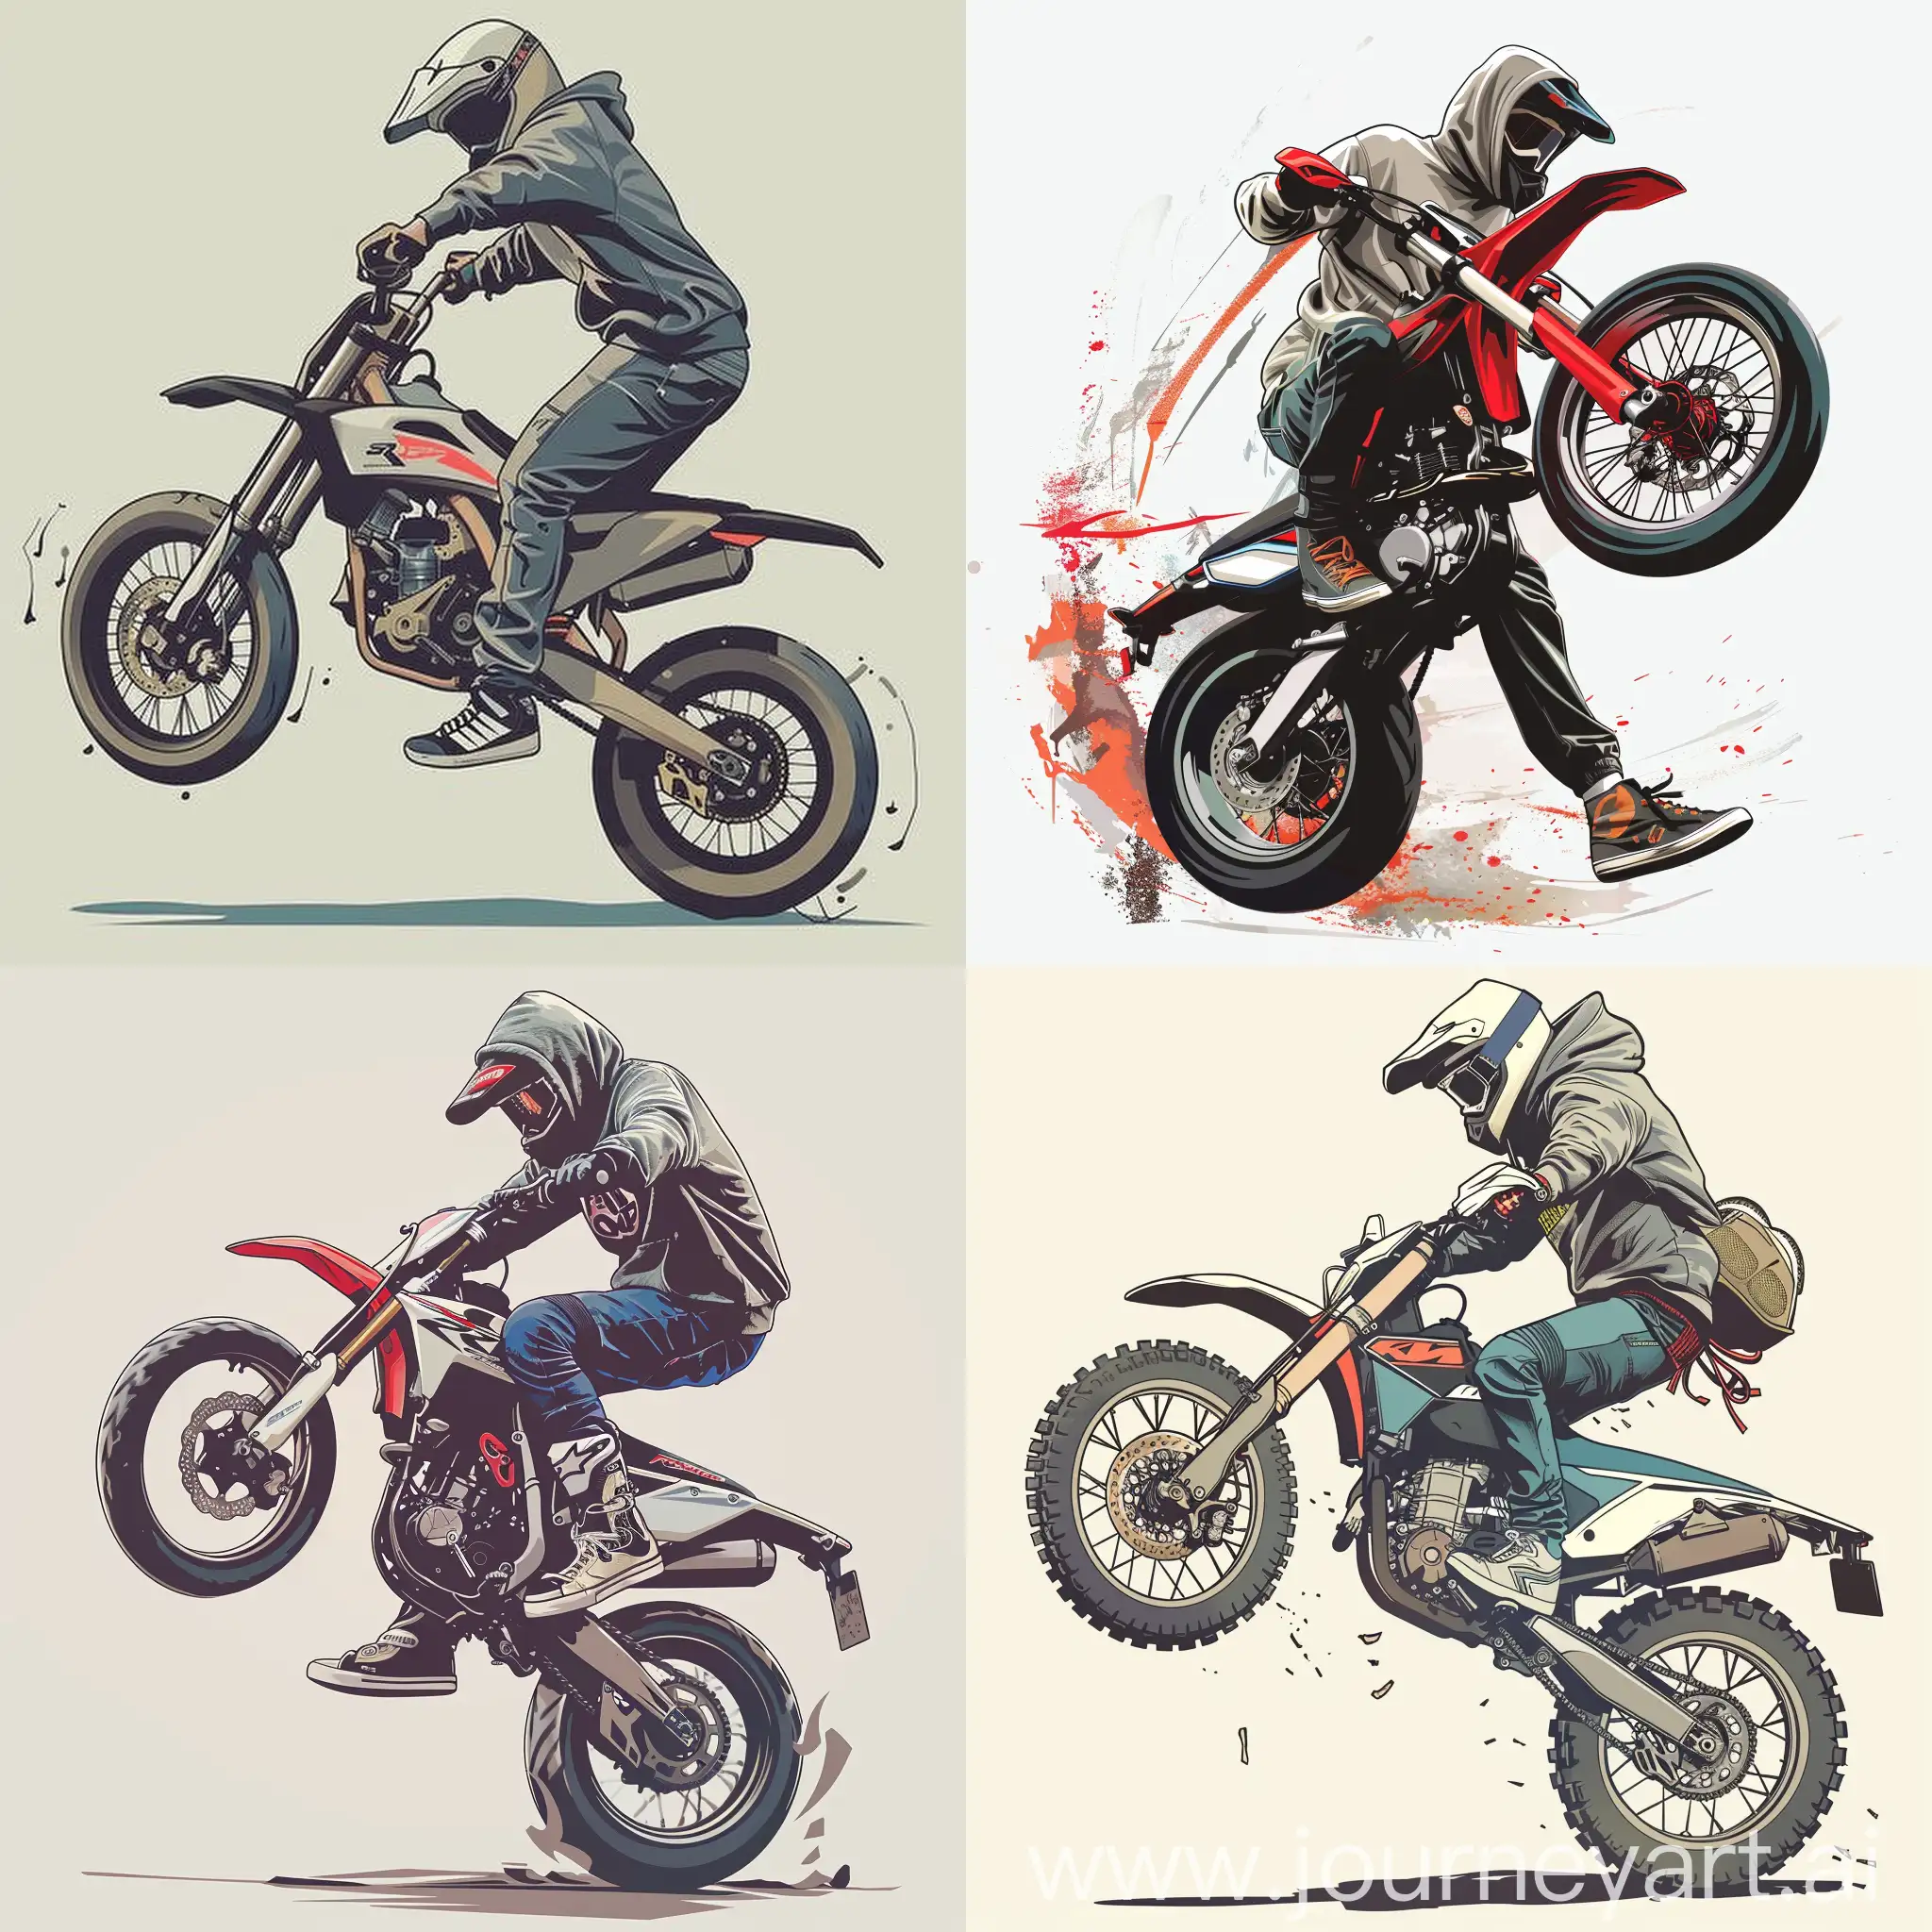 сгенерируй изображение, где мотоциклист едет на заднем колесе (стант) на эндуро мотоцикле или кроссовм, мотоциклист одет в шлем, худи, кроссовки